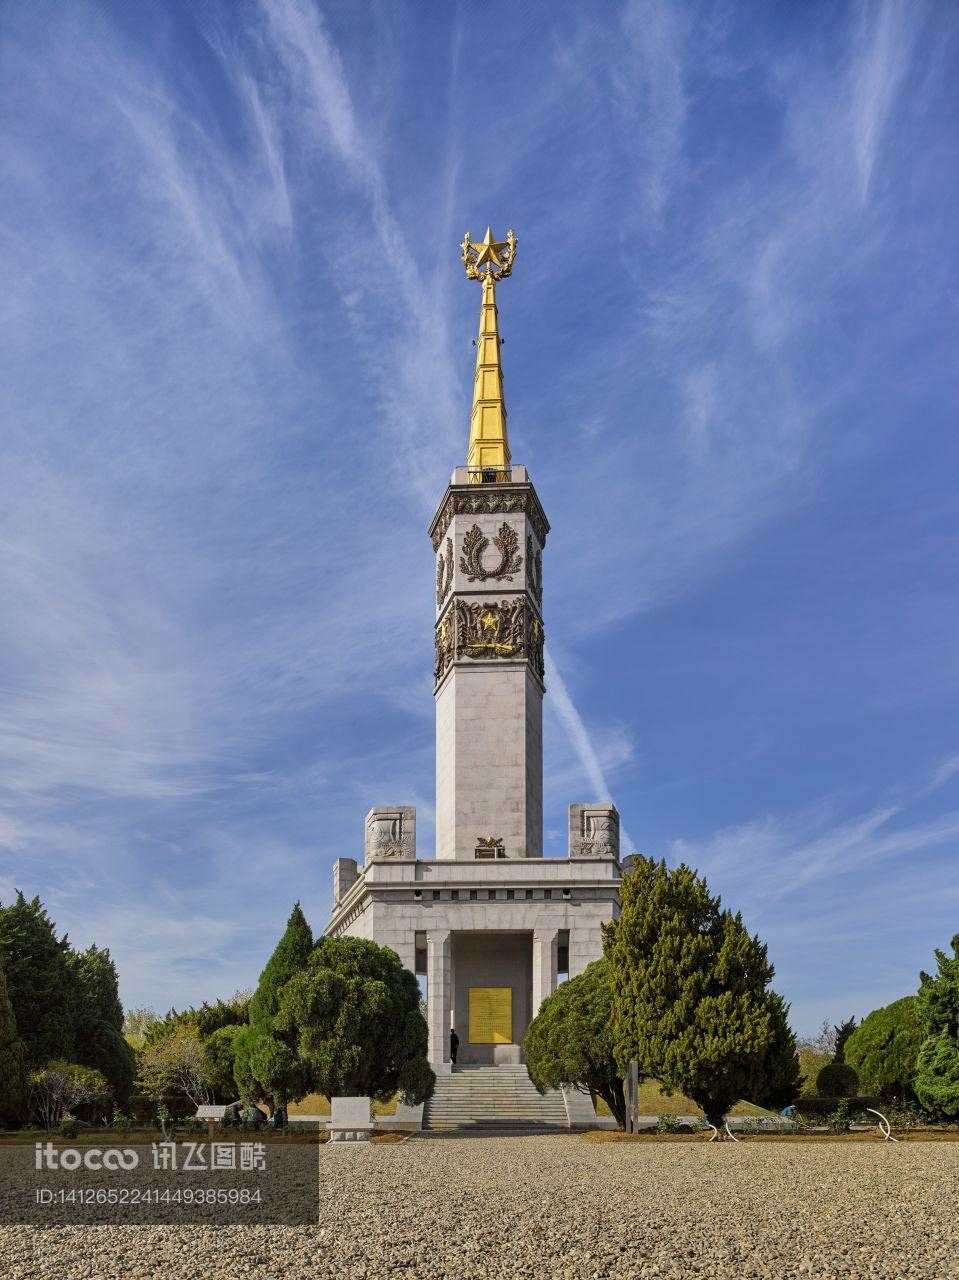 纪念碑,胜利塔,纪念世界反法西斯战争胜利10周年